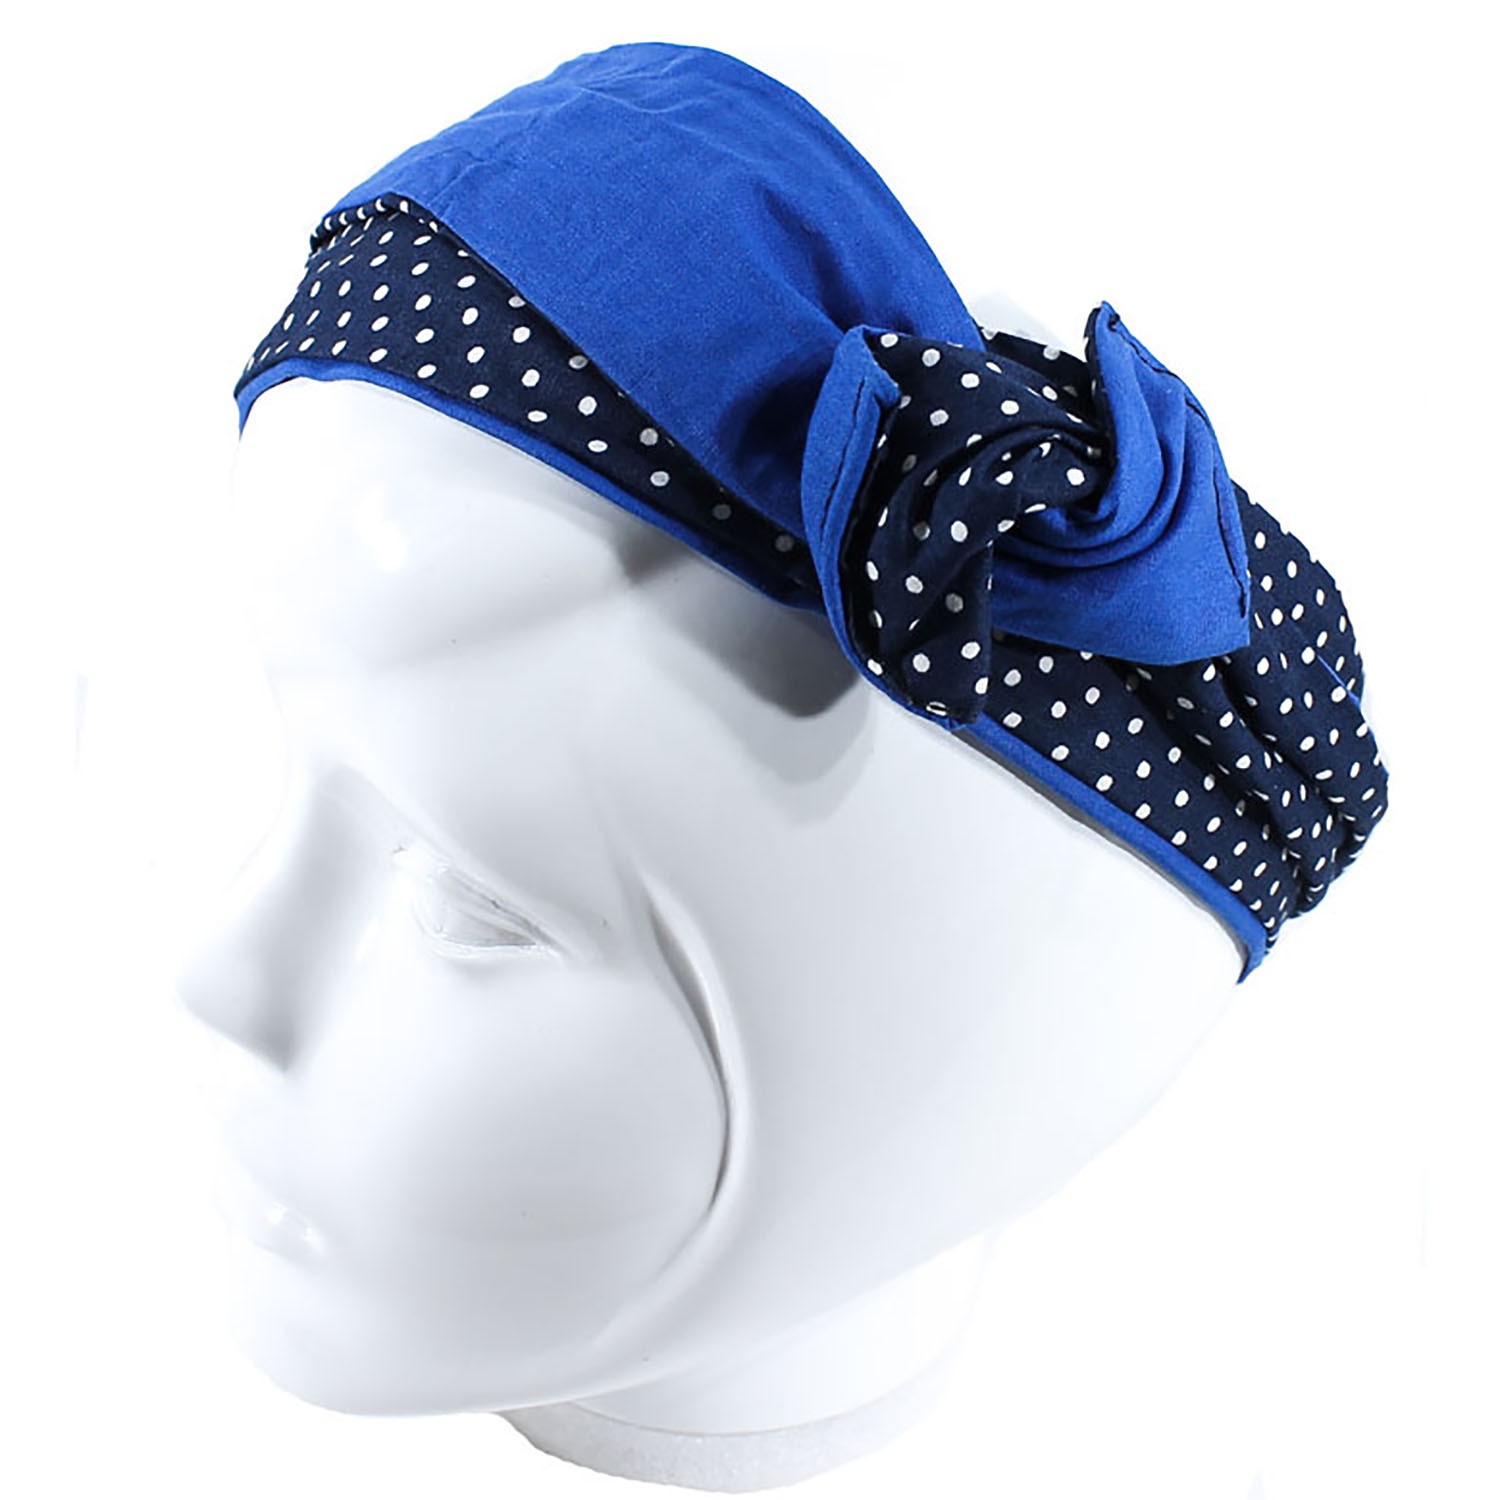 Bandeau de cheveux, headband en tissu coton à pois ou fleuri